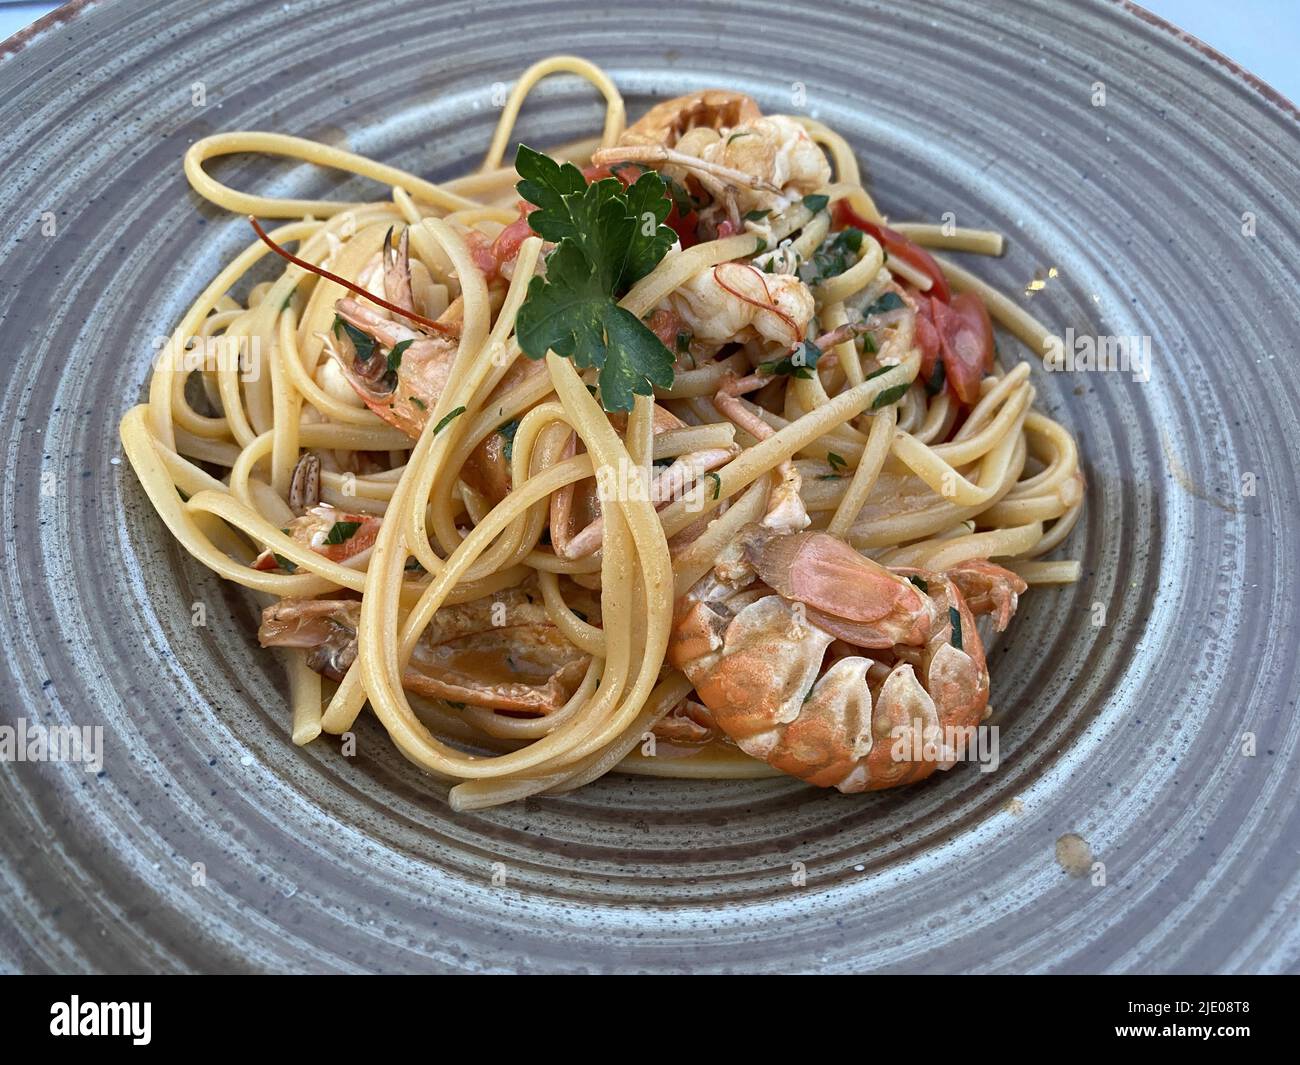 Plate Spaghetti con Frutti di Mare, spaghetti with seafood, Sicily, Italy Stock Photo